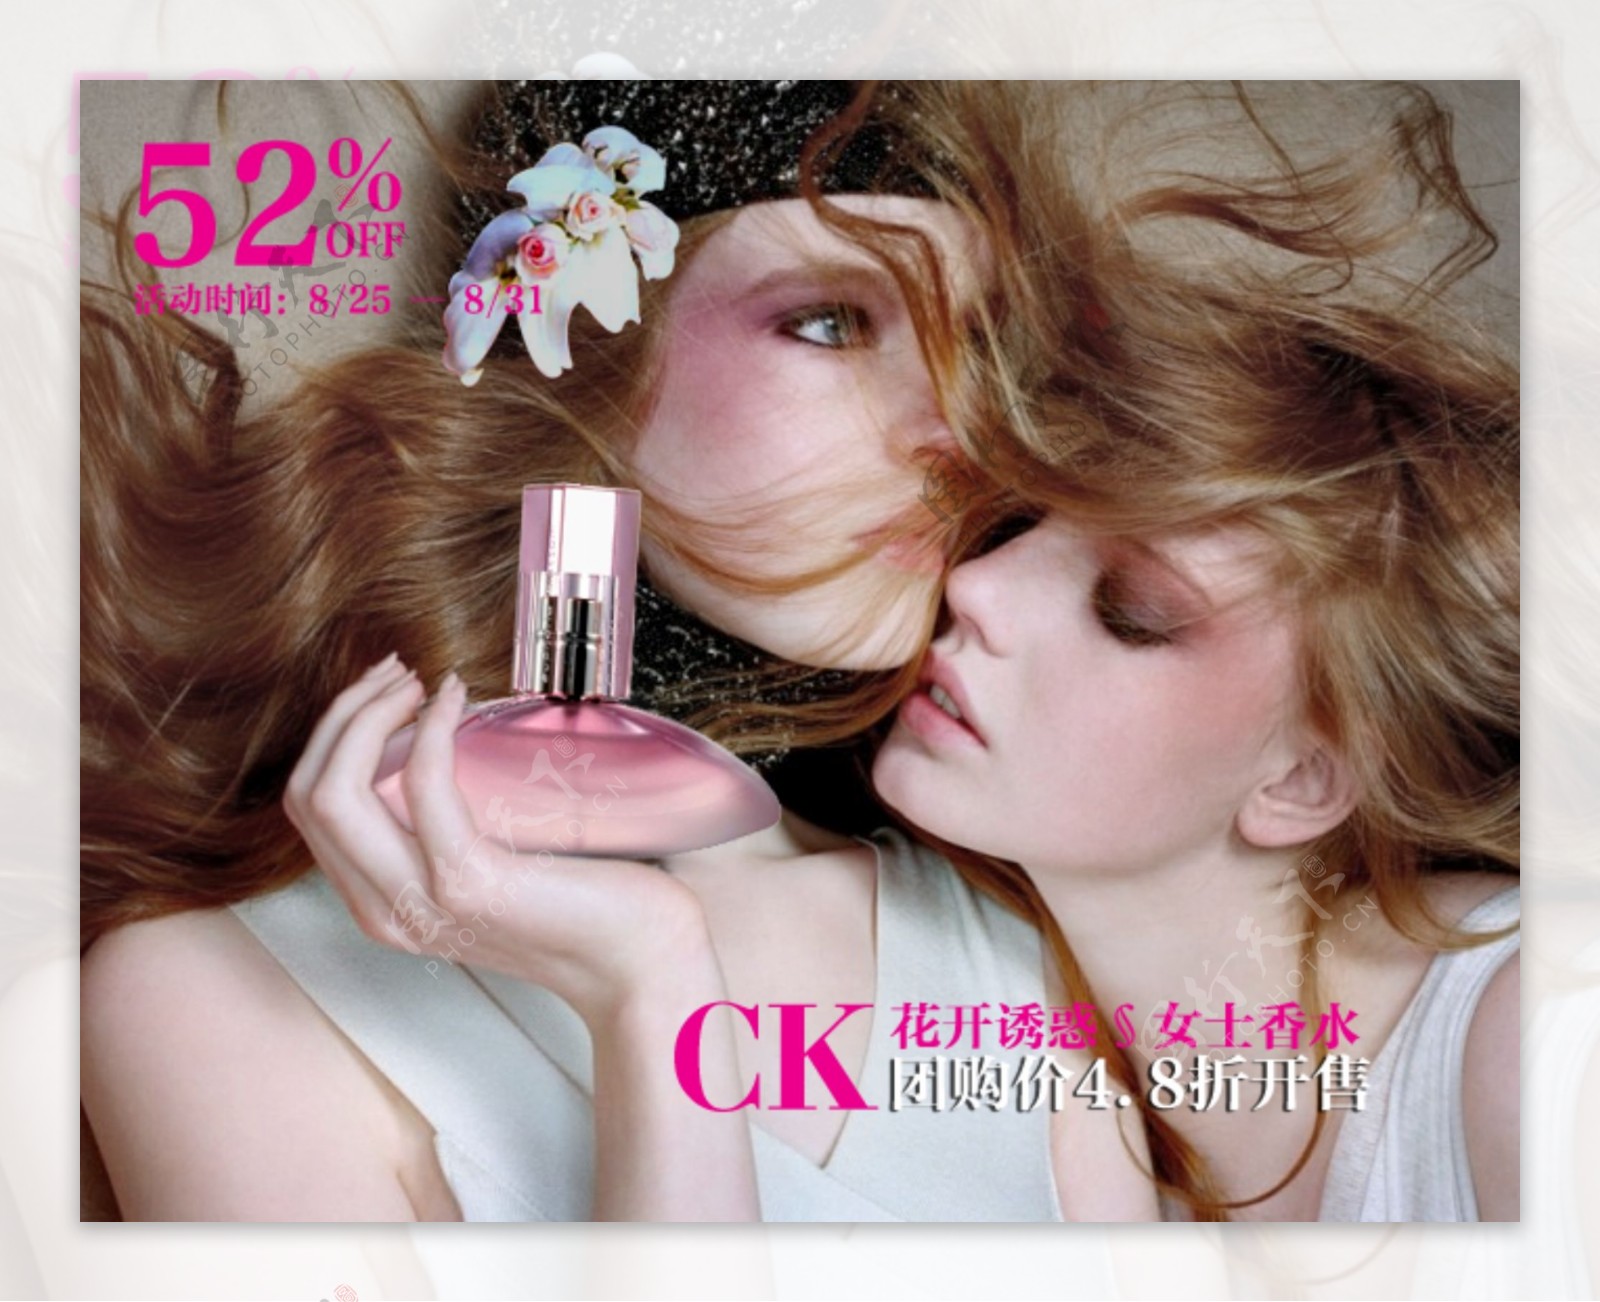 奢侈品网站ck香水广告设计图片